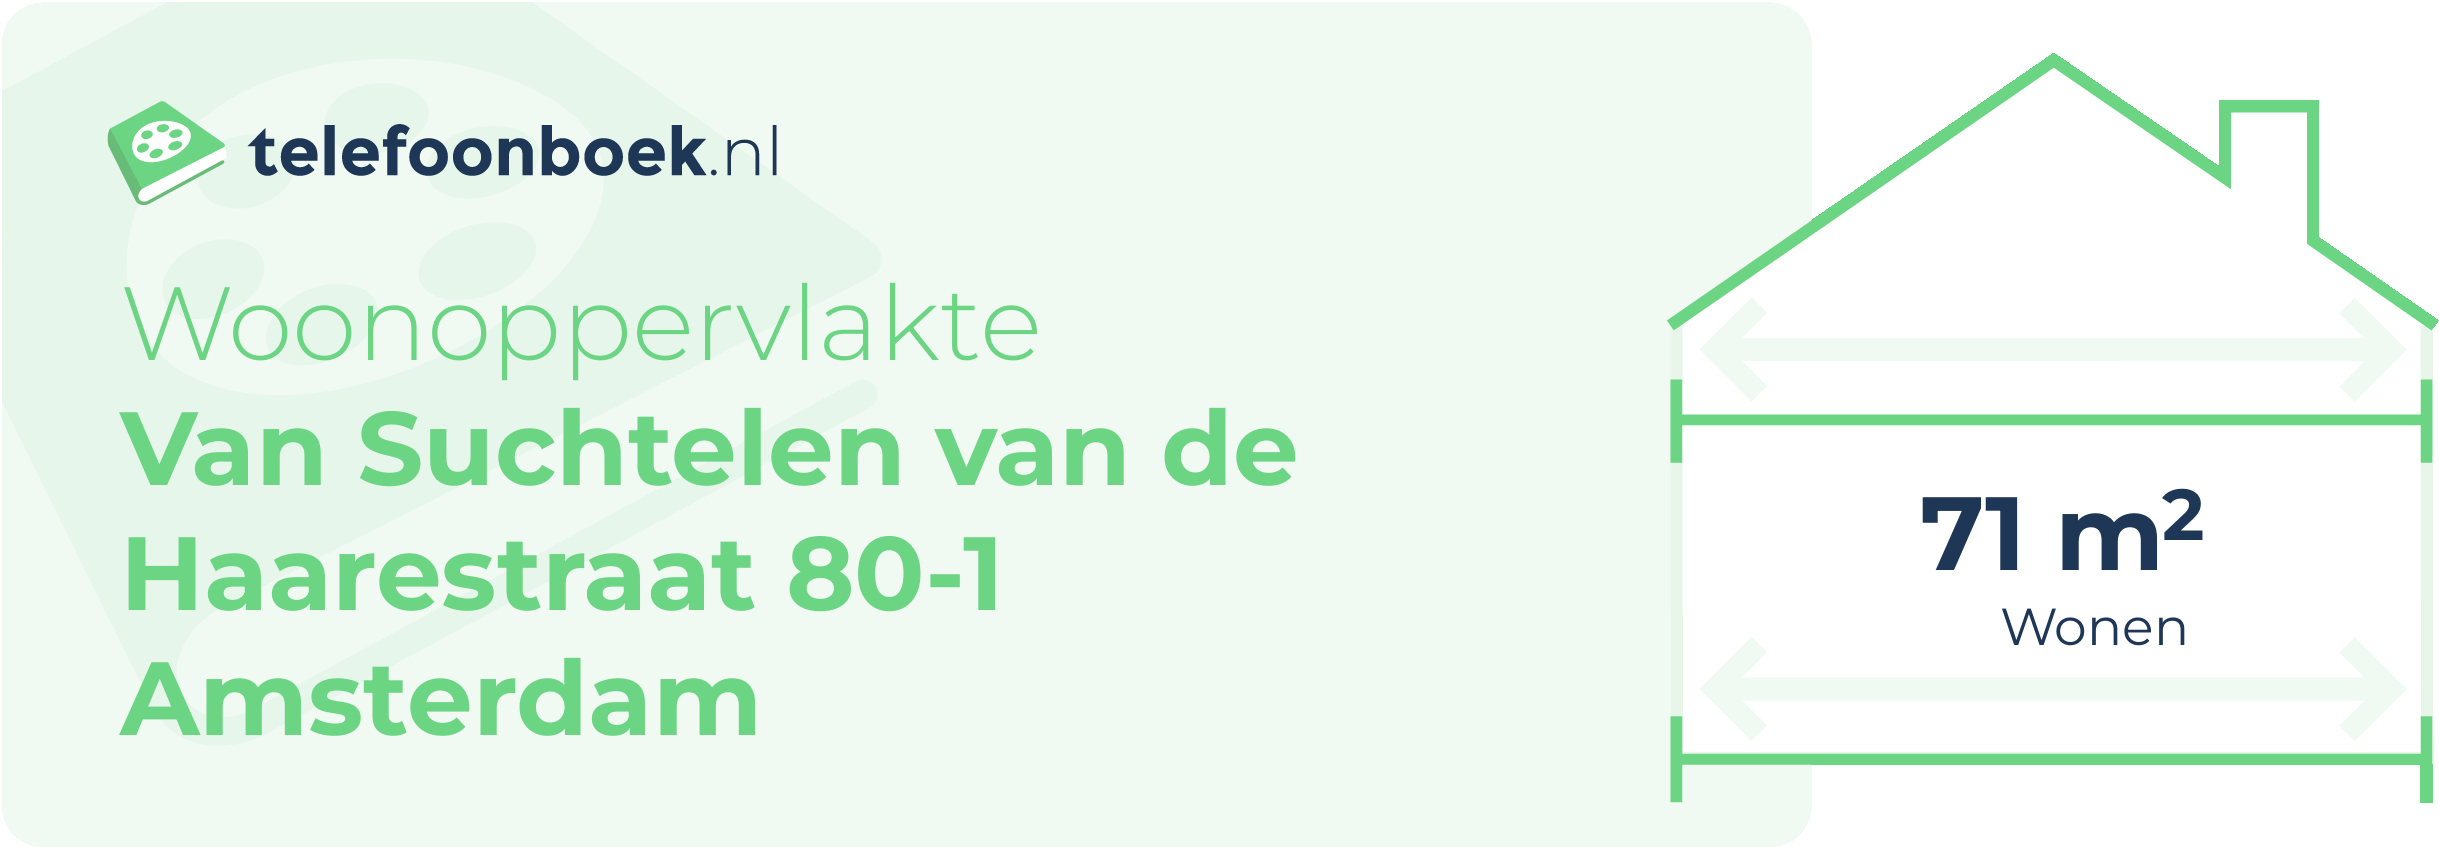 Woonoppervlakte Van Suchtelen Van De Haarestraat 80-1 Amsterdam